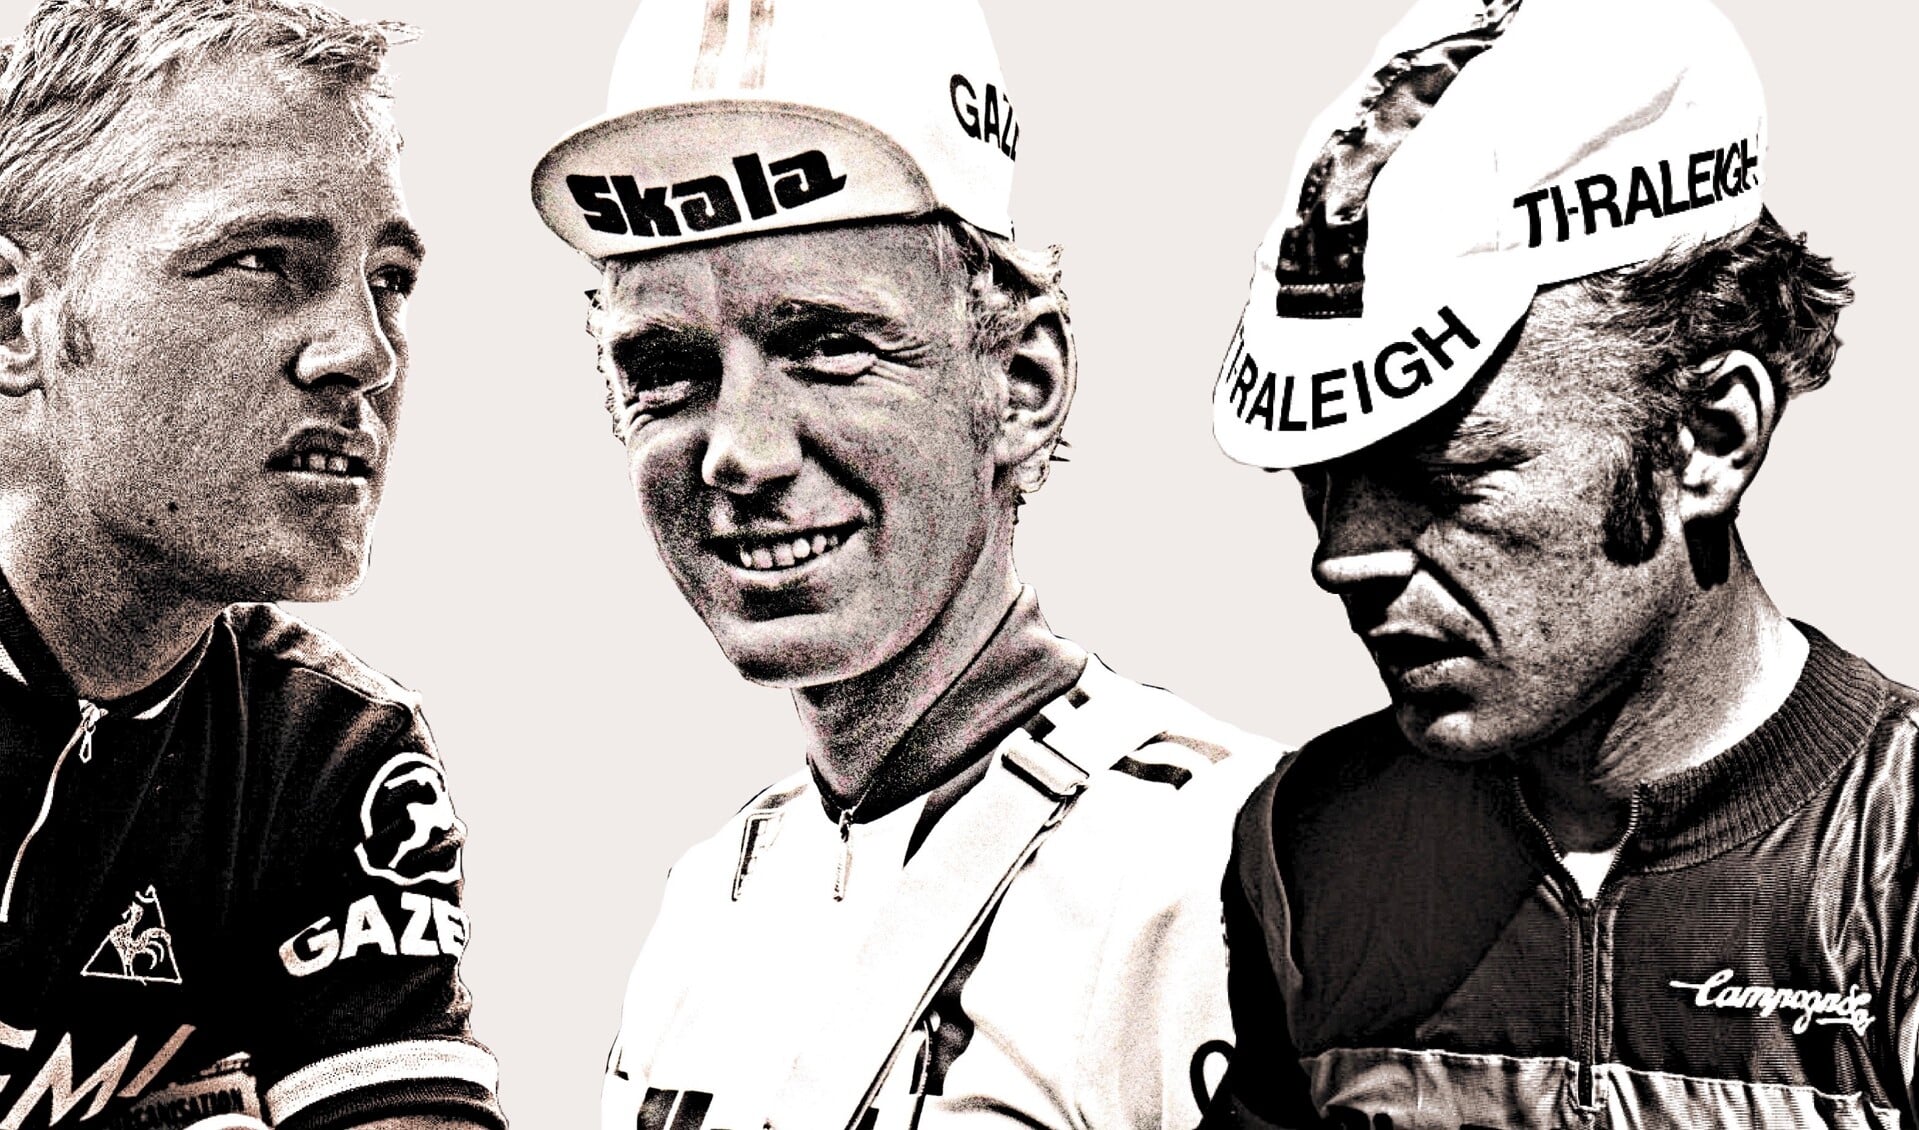 V.l.n.r.: Jan, Fons en Piet van Katwijk, die als renner zijn brood verdiende bij de legendarische Ti-Raleighploeg van Peter Post.